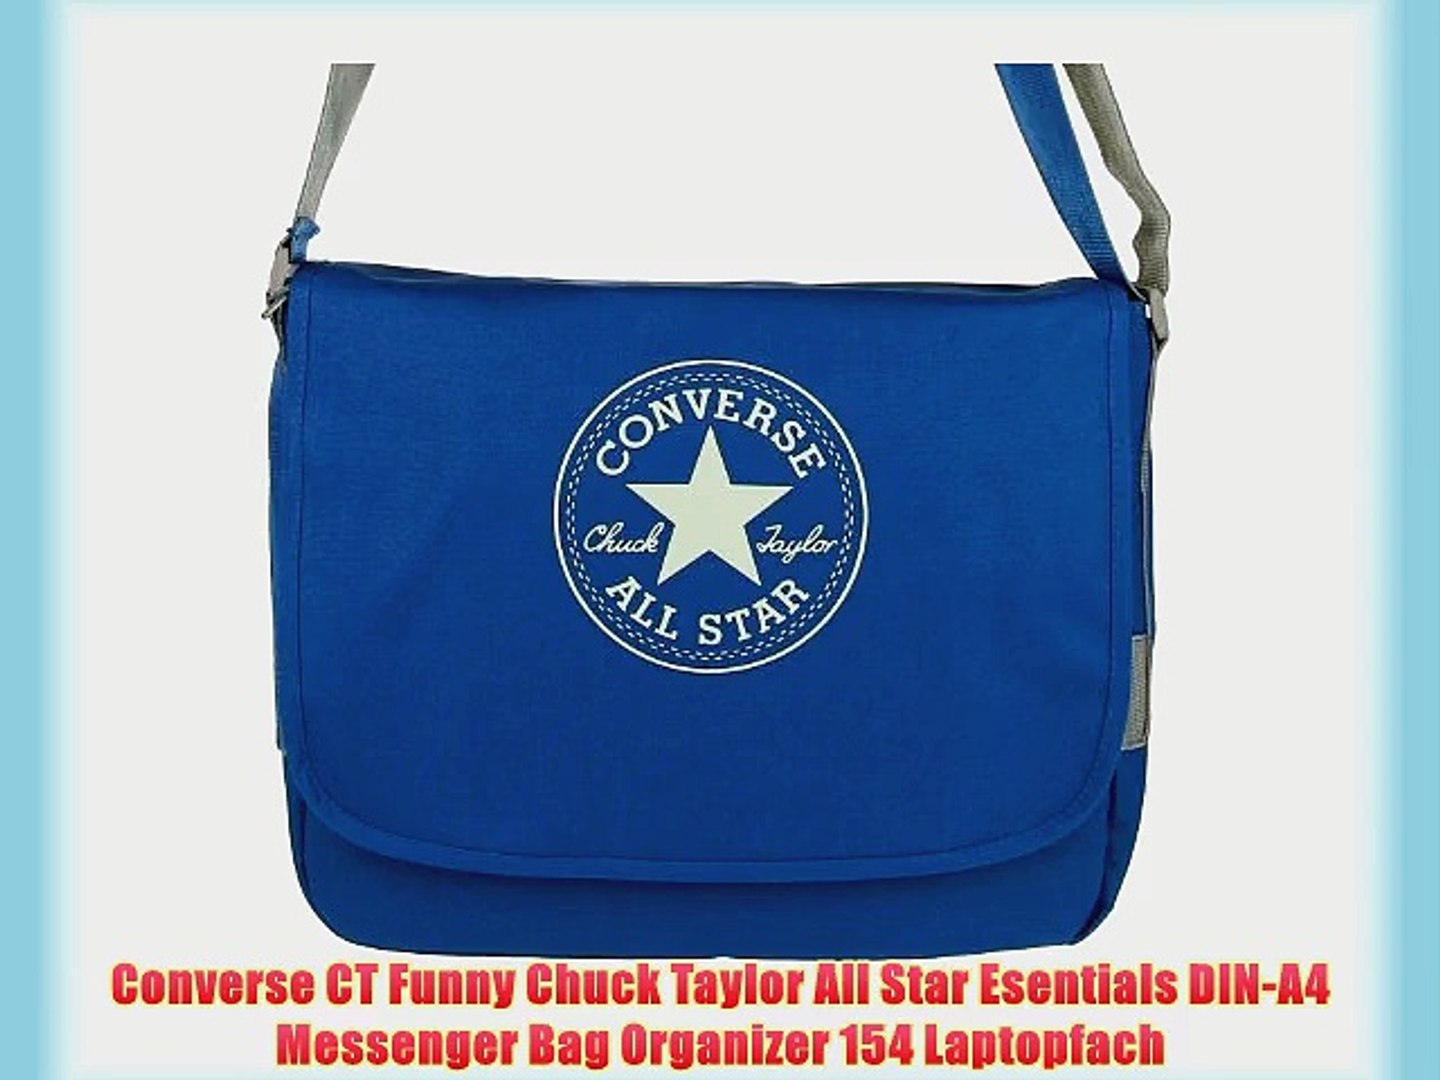 converse all star chuck taylor messenger bag